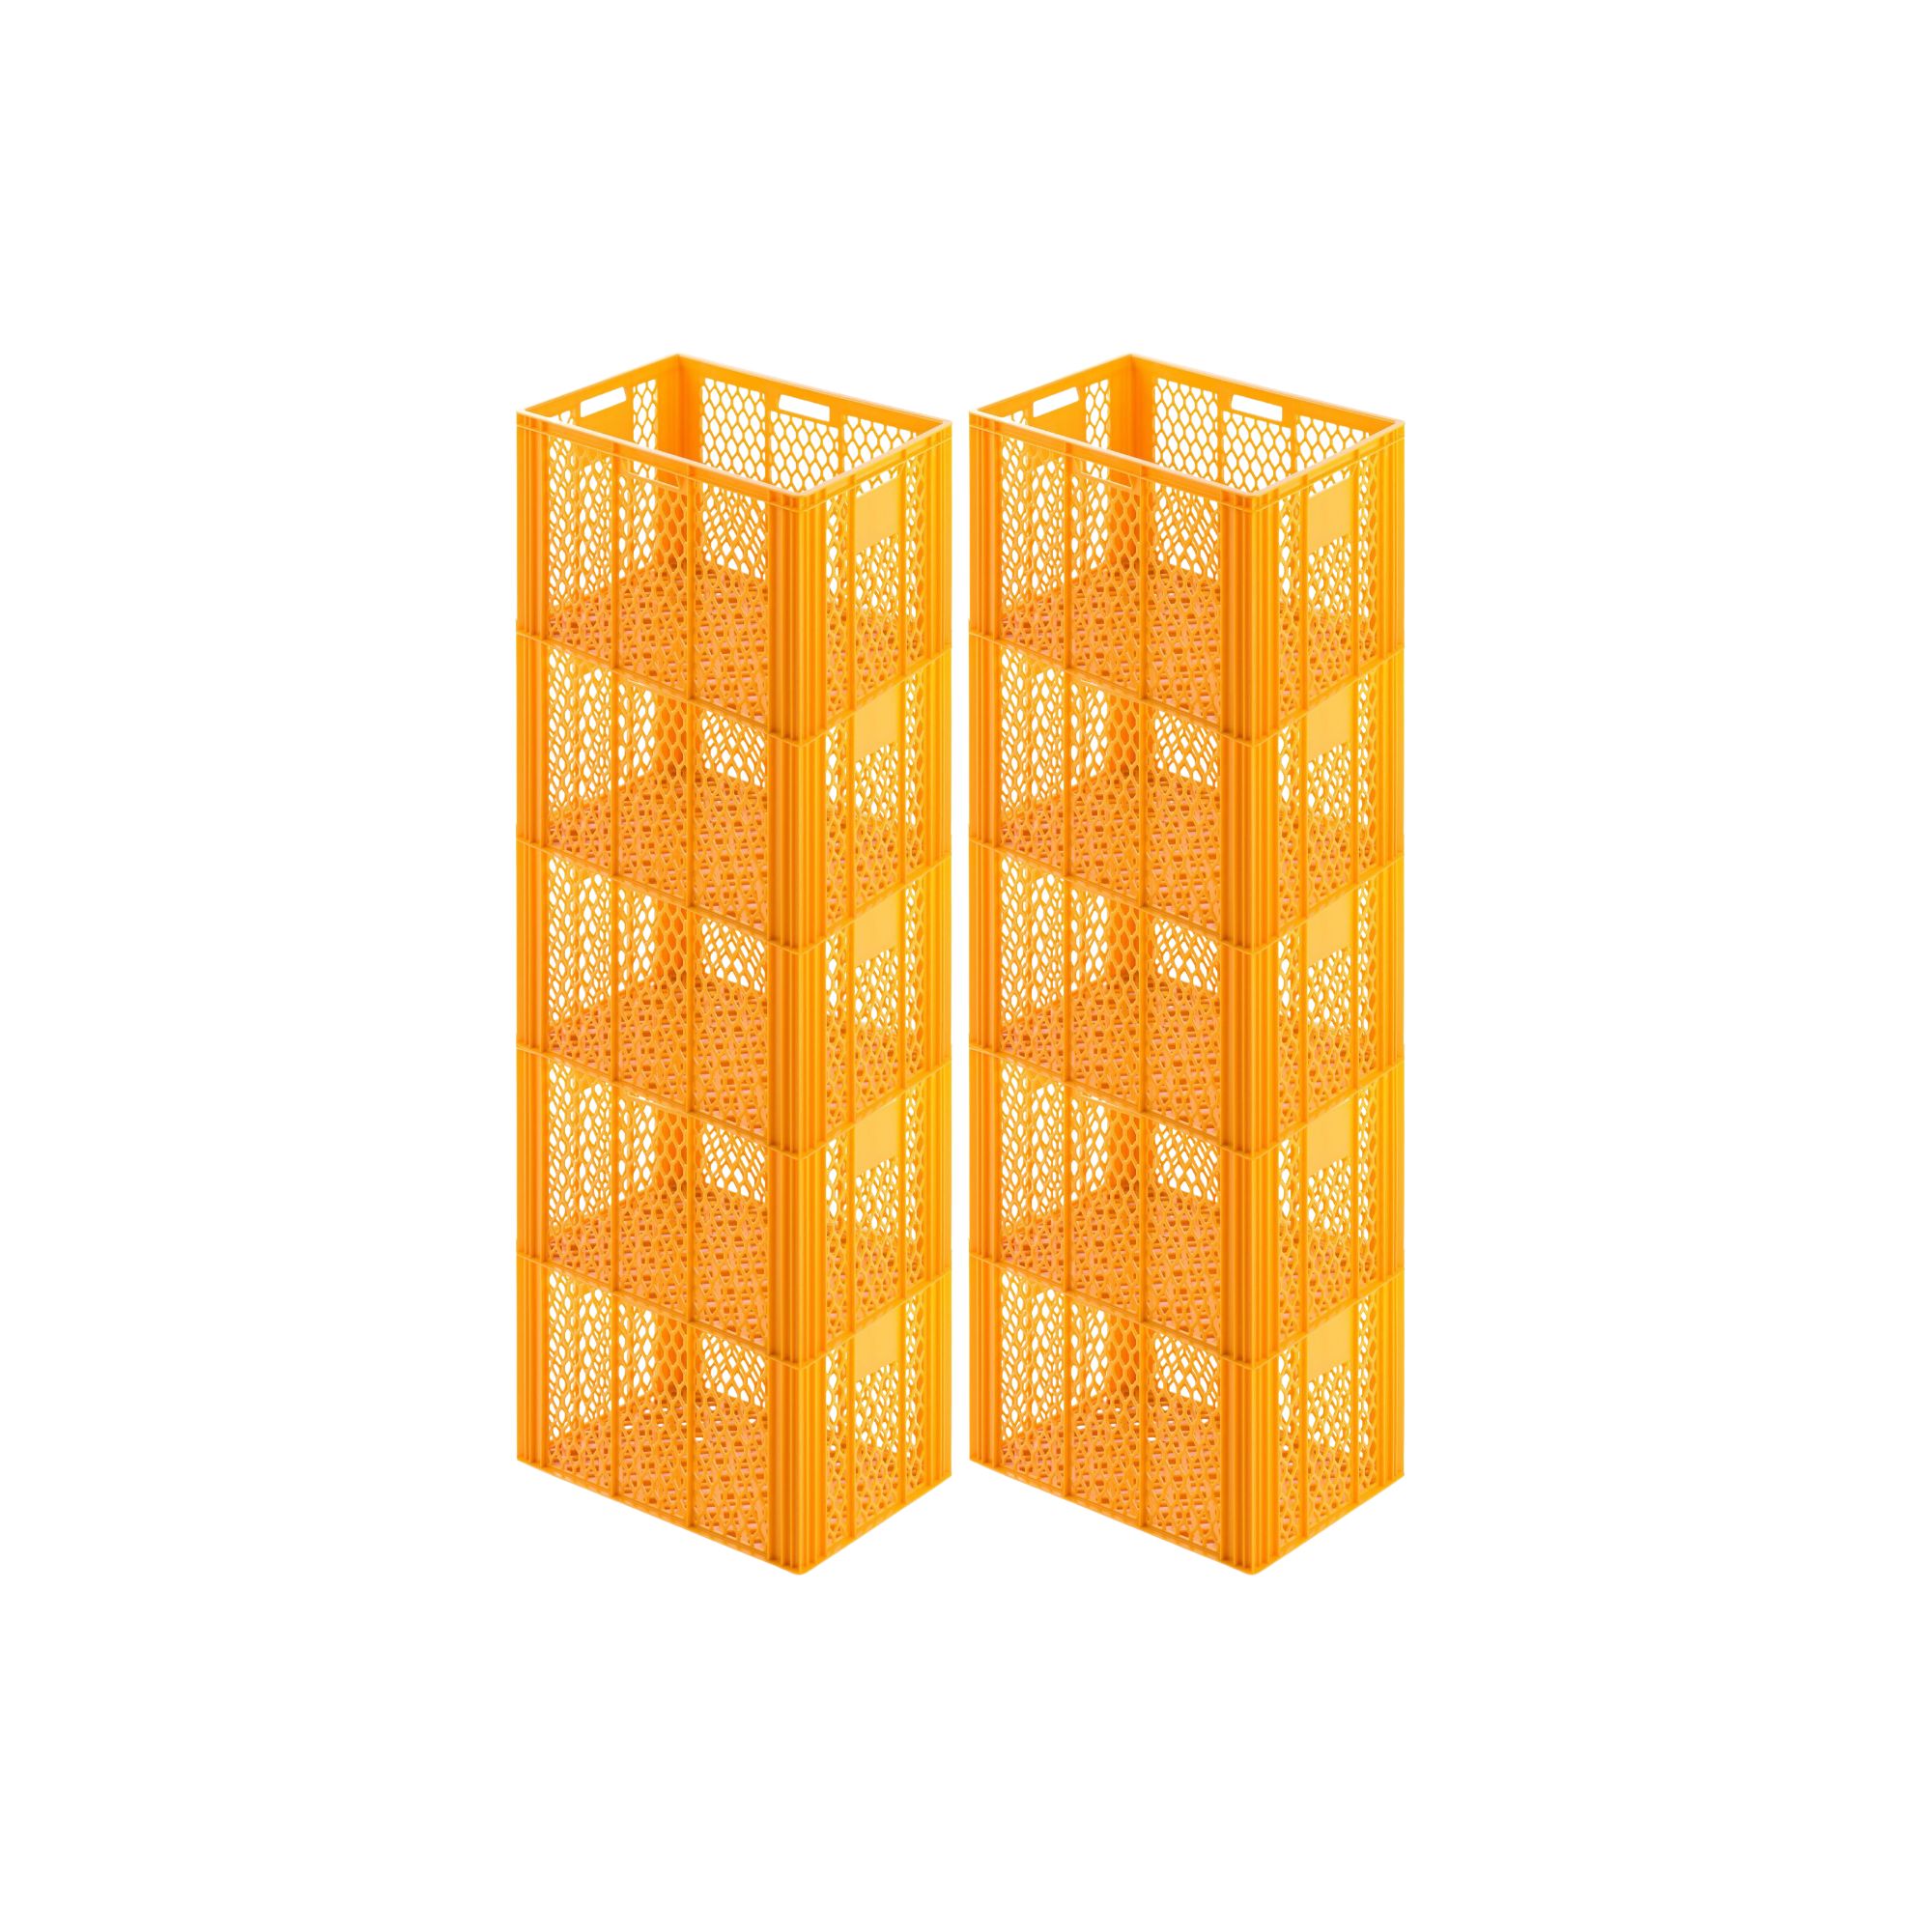 Eurobehälter Bäcker- & Konditorenkasten | HxBxT 42,1x40x60 | 85 Liter | Gelb-Orange | Brötchenkiste, stapelbare Bäckerkiste